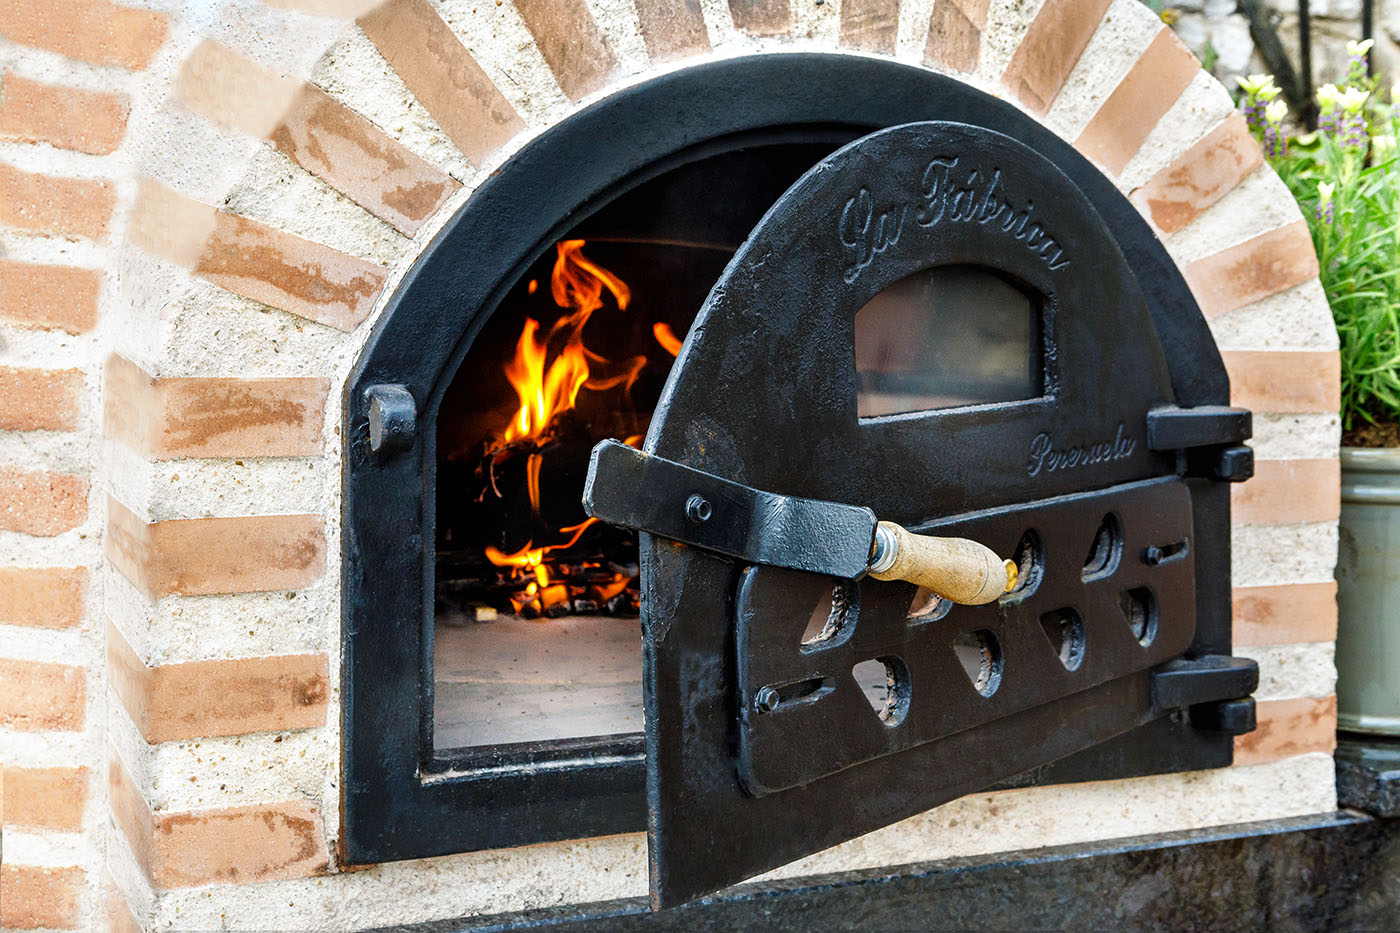 Cast Iron pizza oven door with glass | bread oven doors | 490x280mm